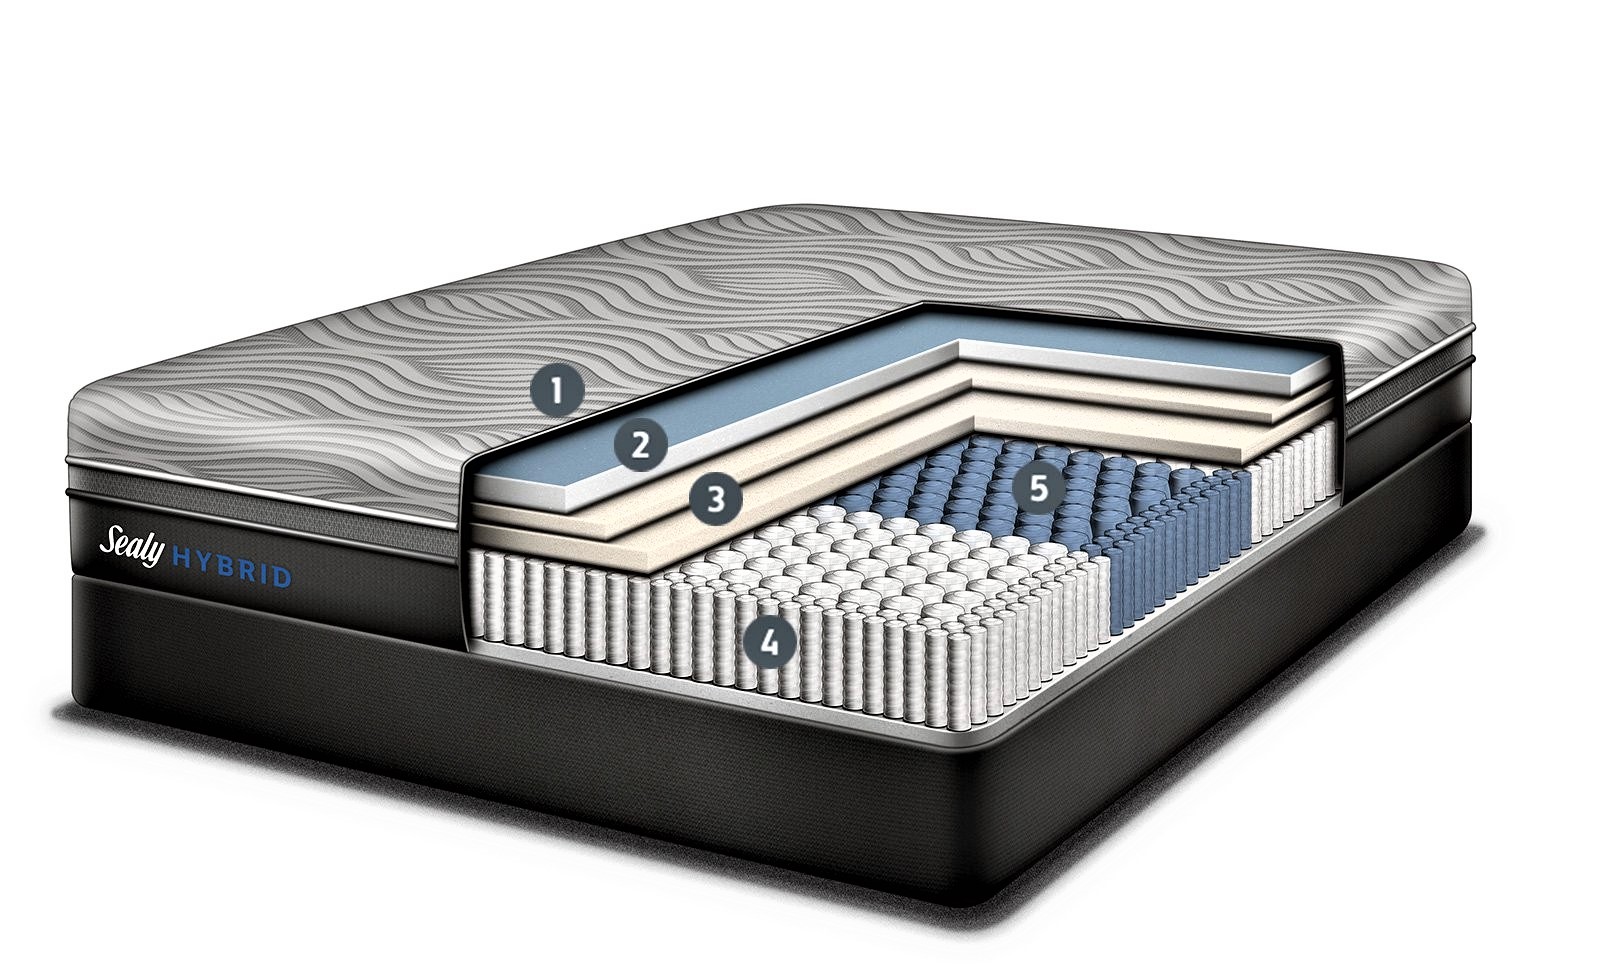 Sealy hybrid rugós - memóriahabos matrac